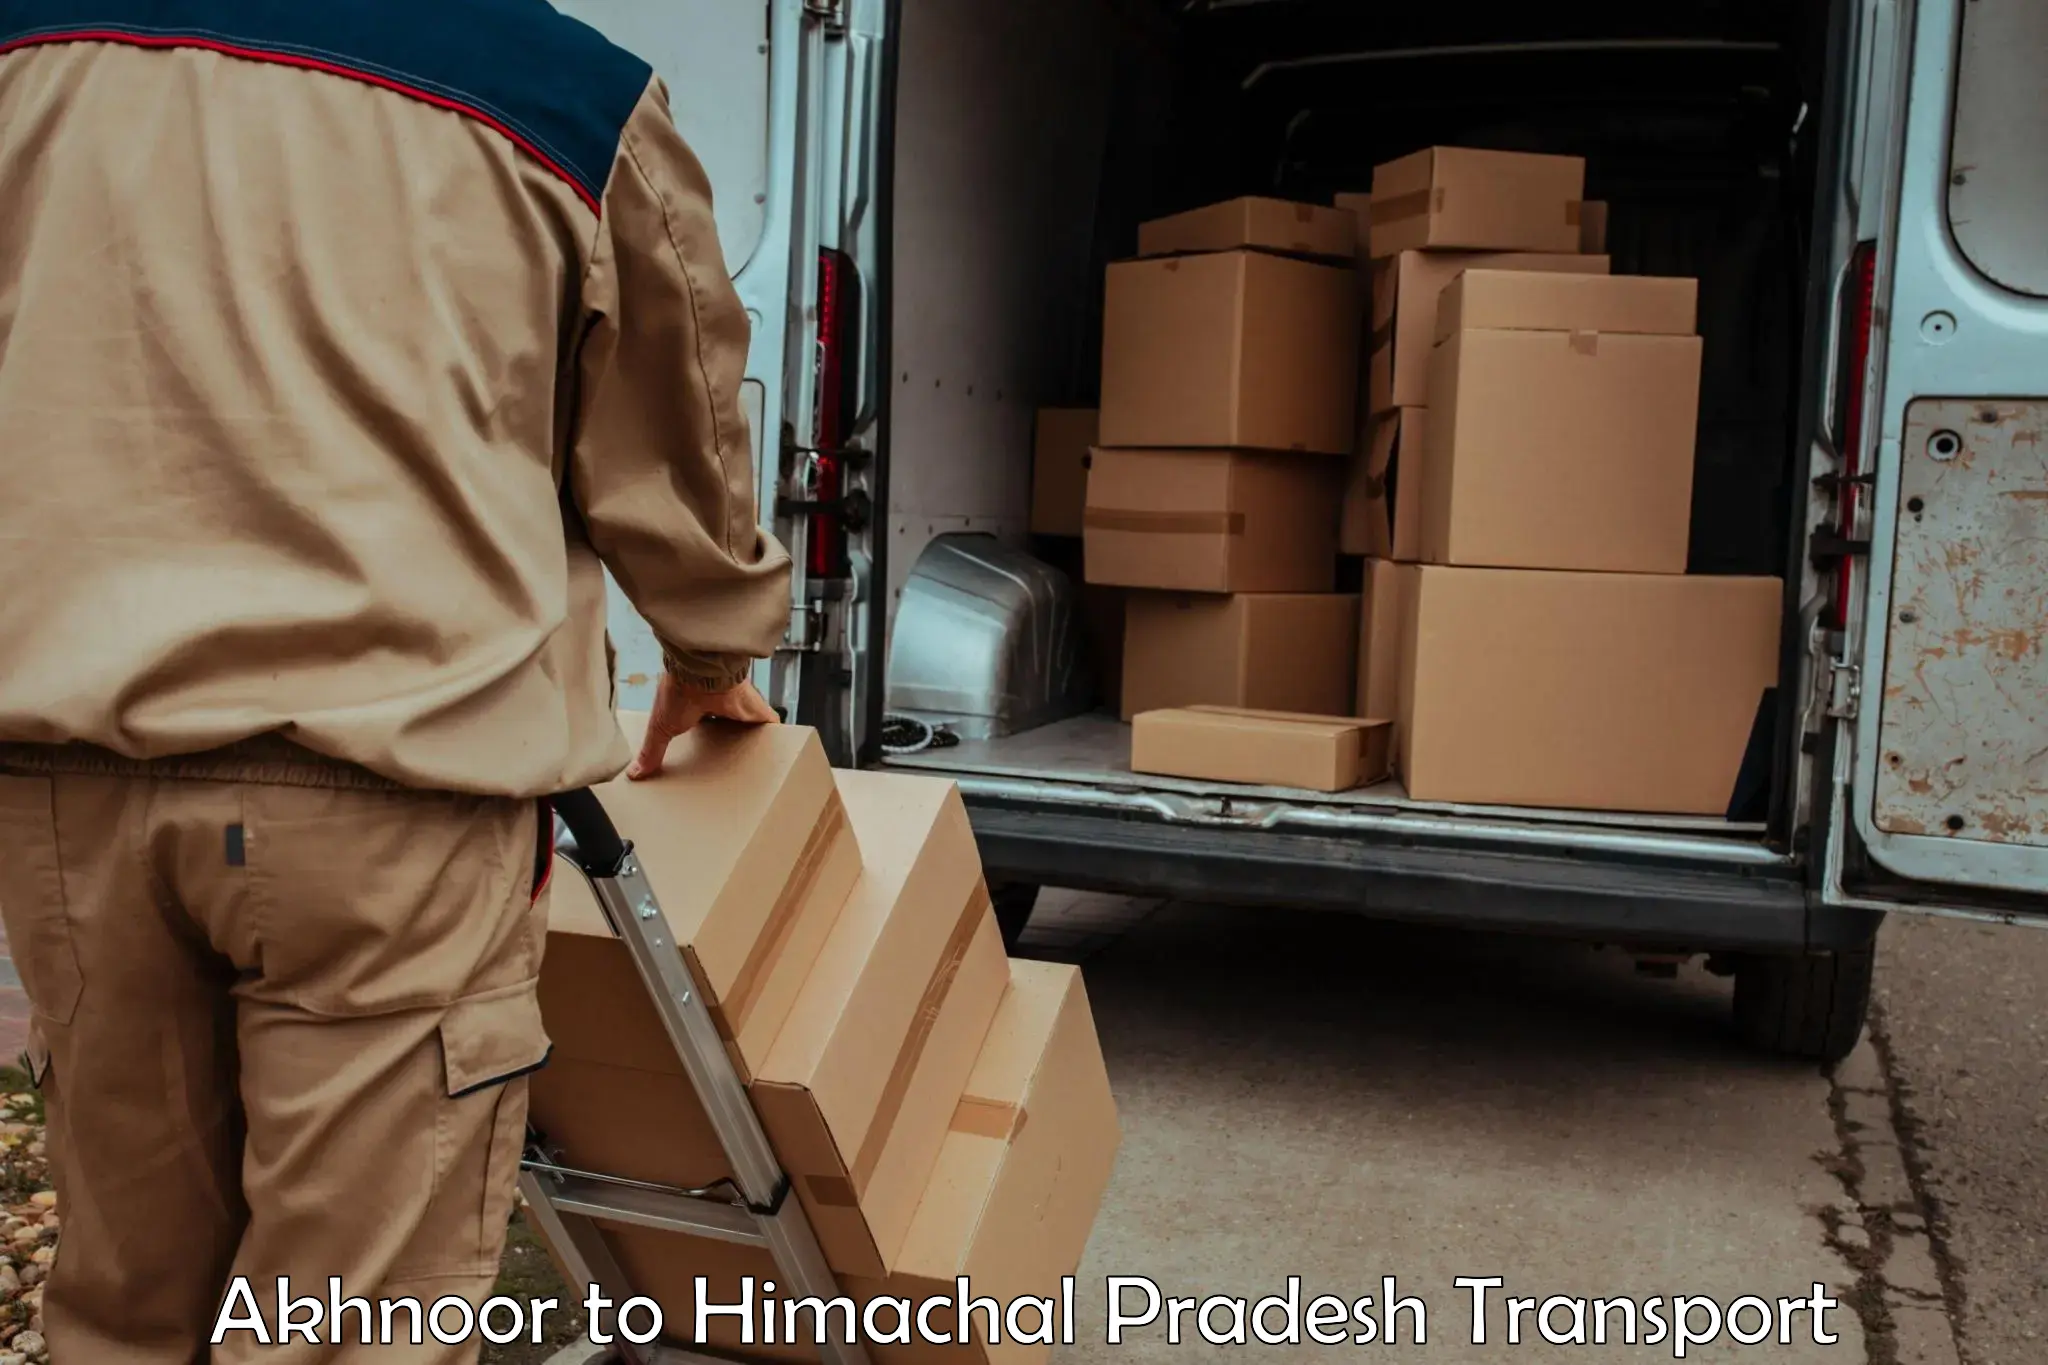 Container transport service Akhnoor to Himachal Pradesh